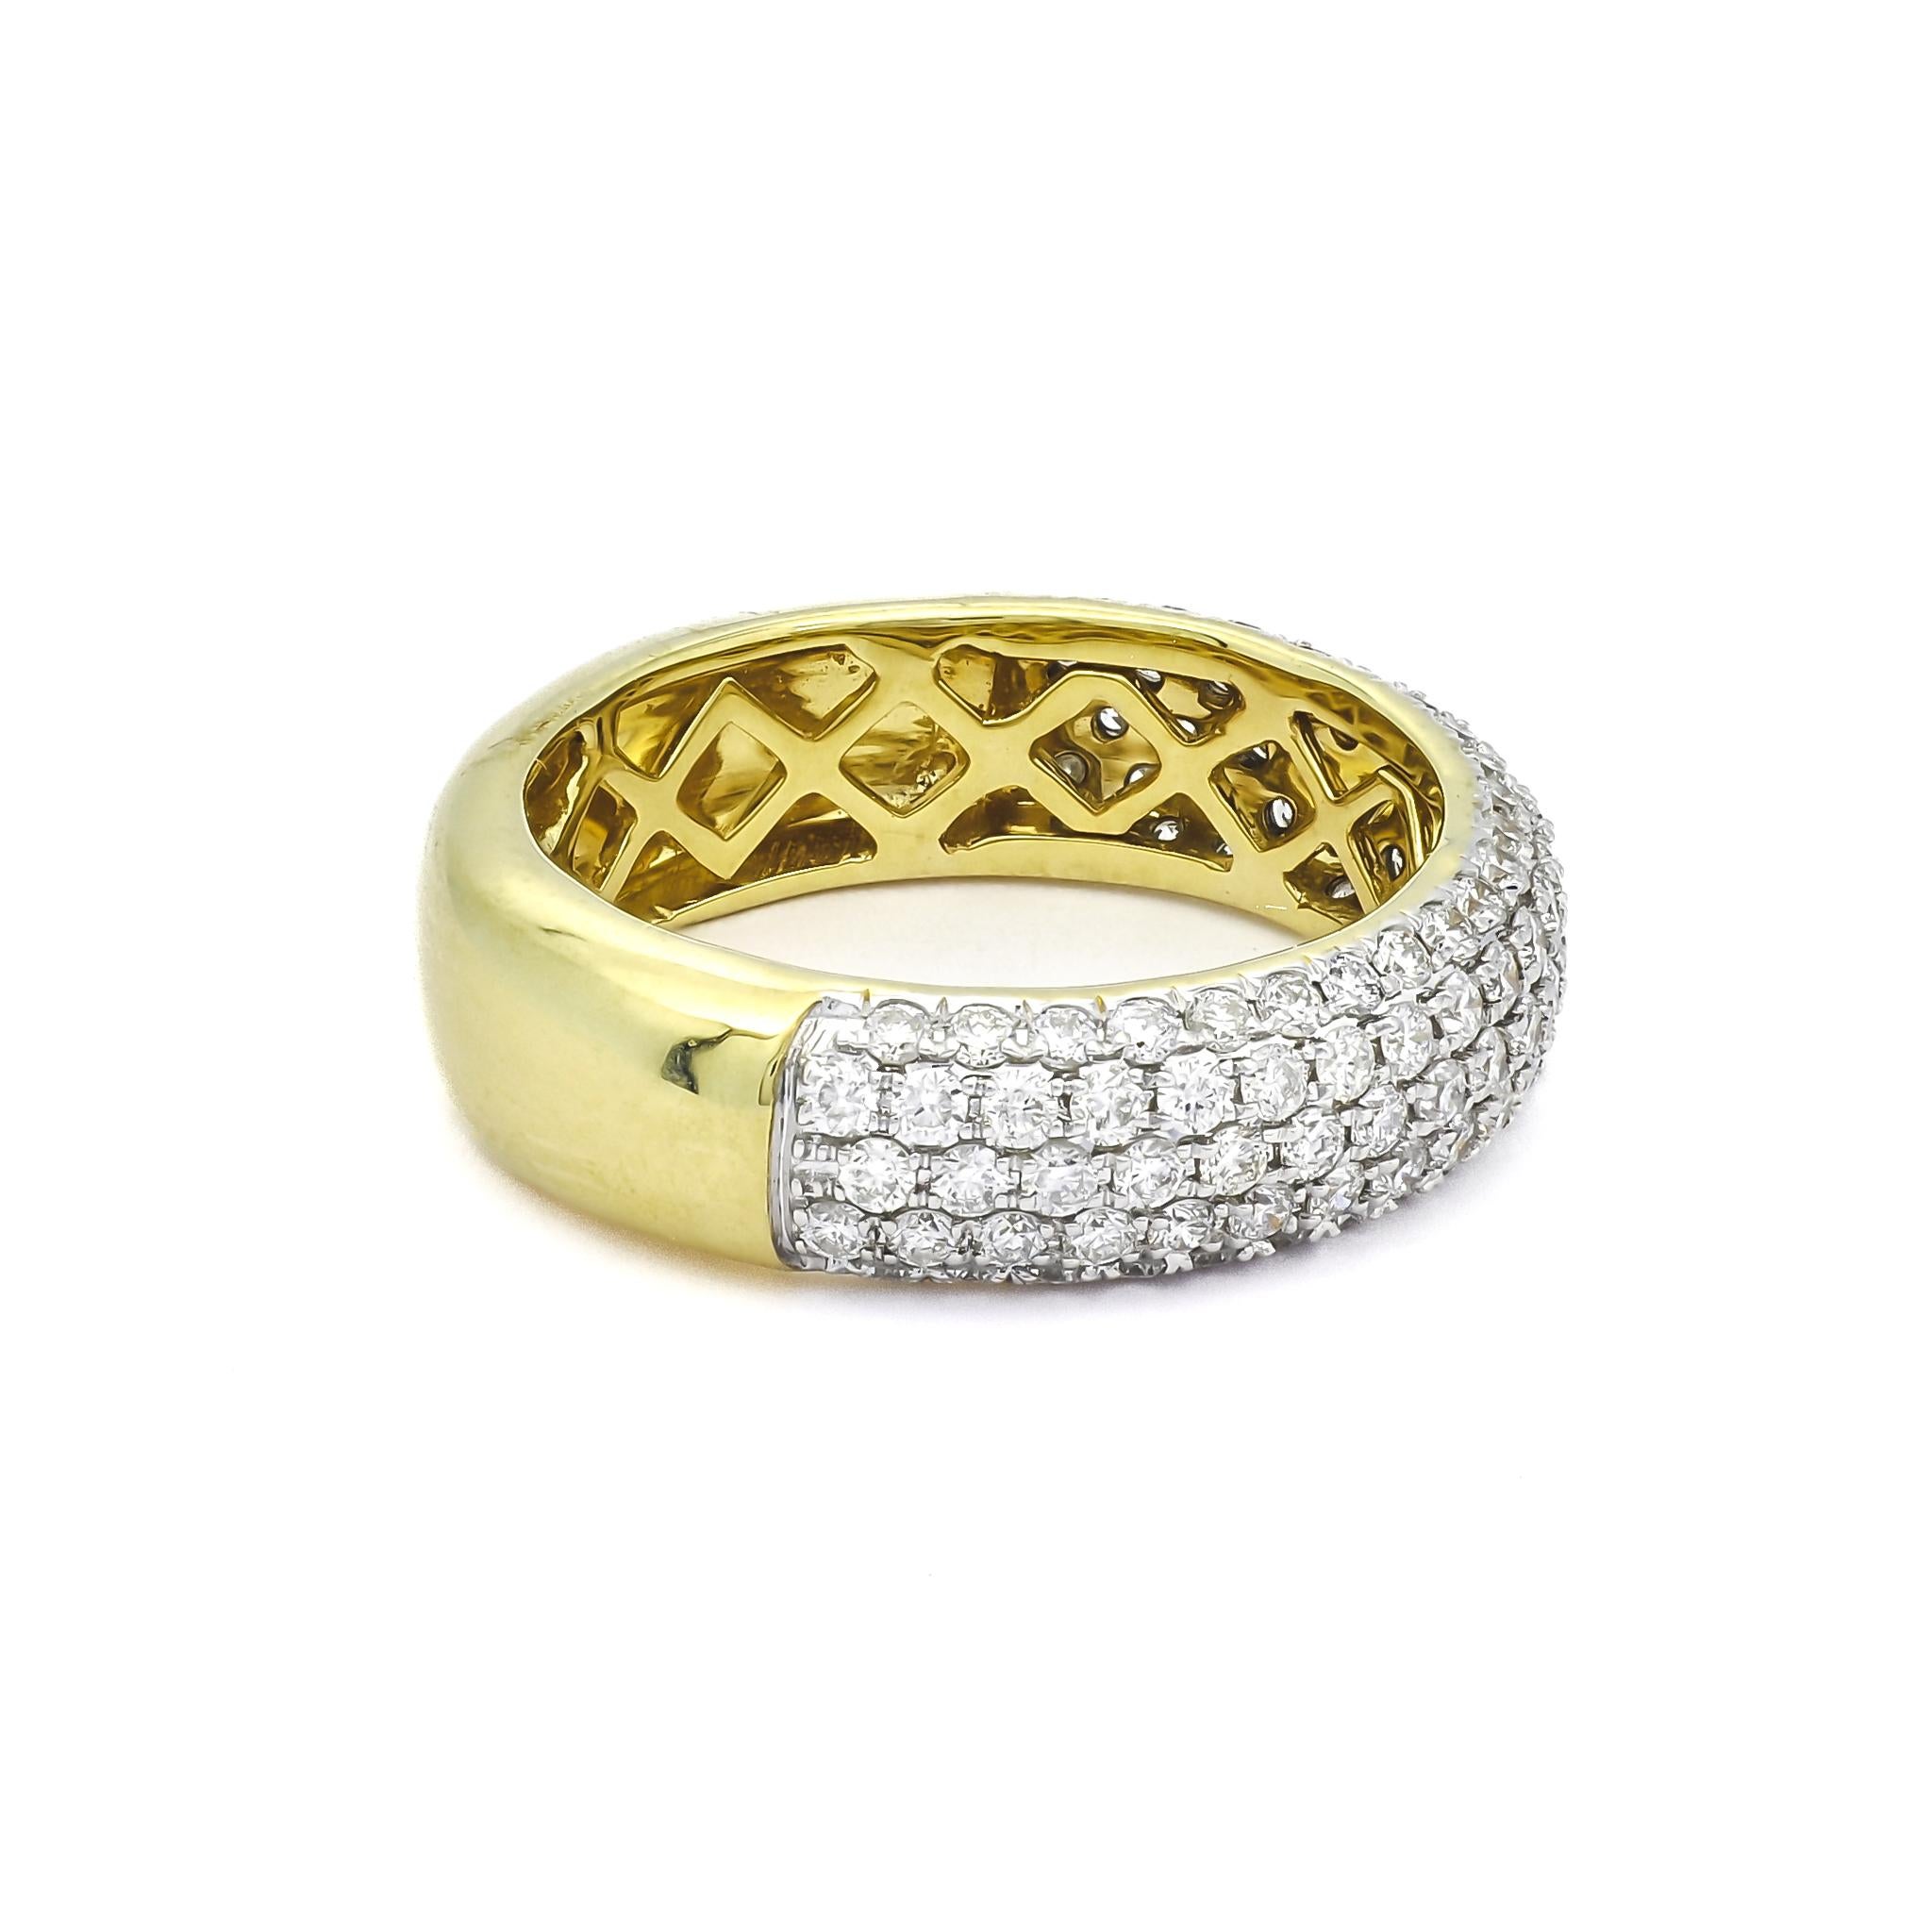 Dieser exquisite Ring ist eine schillernde Inszenierung von Opulenz, geschmückt mit bemerkenswerten 1,25 Karat Diamanten, die den Betrachter mit ihrer strahlenden Brillanz in ihren Bann ziehen. Die sorgfältige handwerkliche Verarbeitung zeigt sich